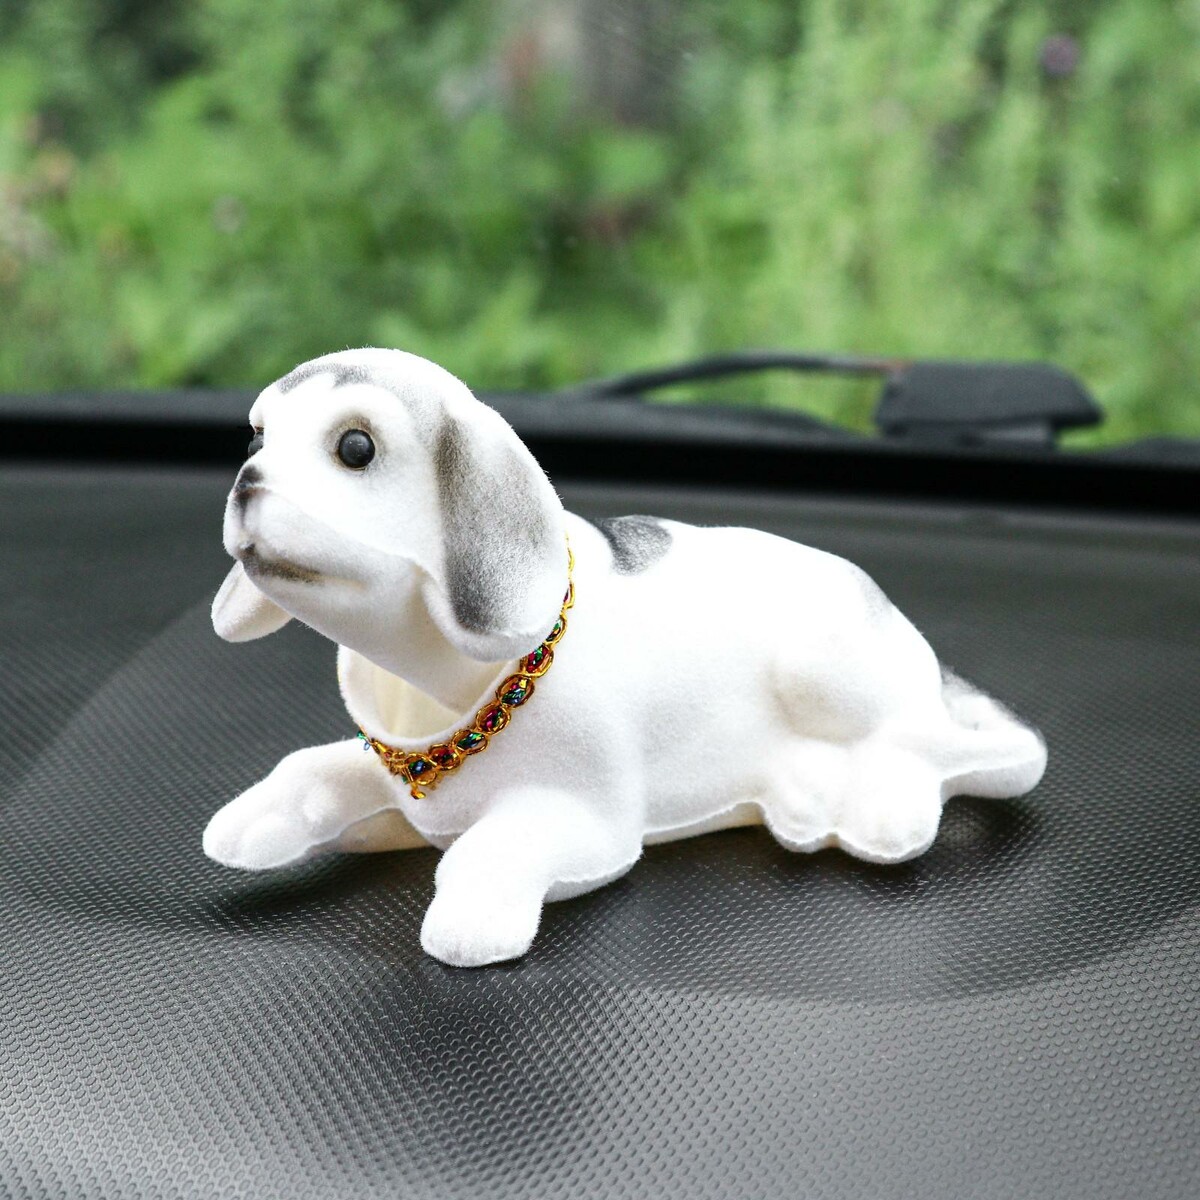 Собака на панель авто, качающая головой, большая, белый окрас